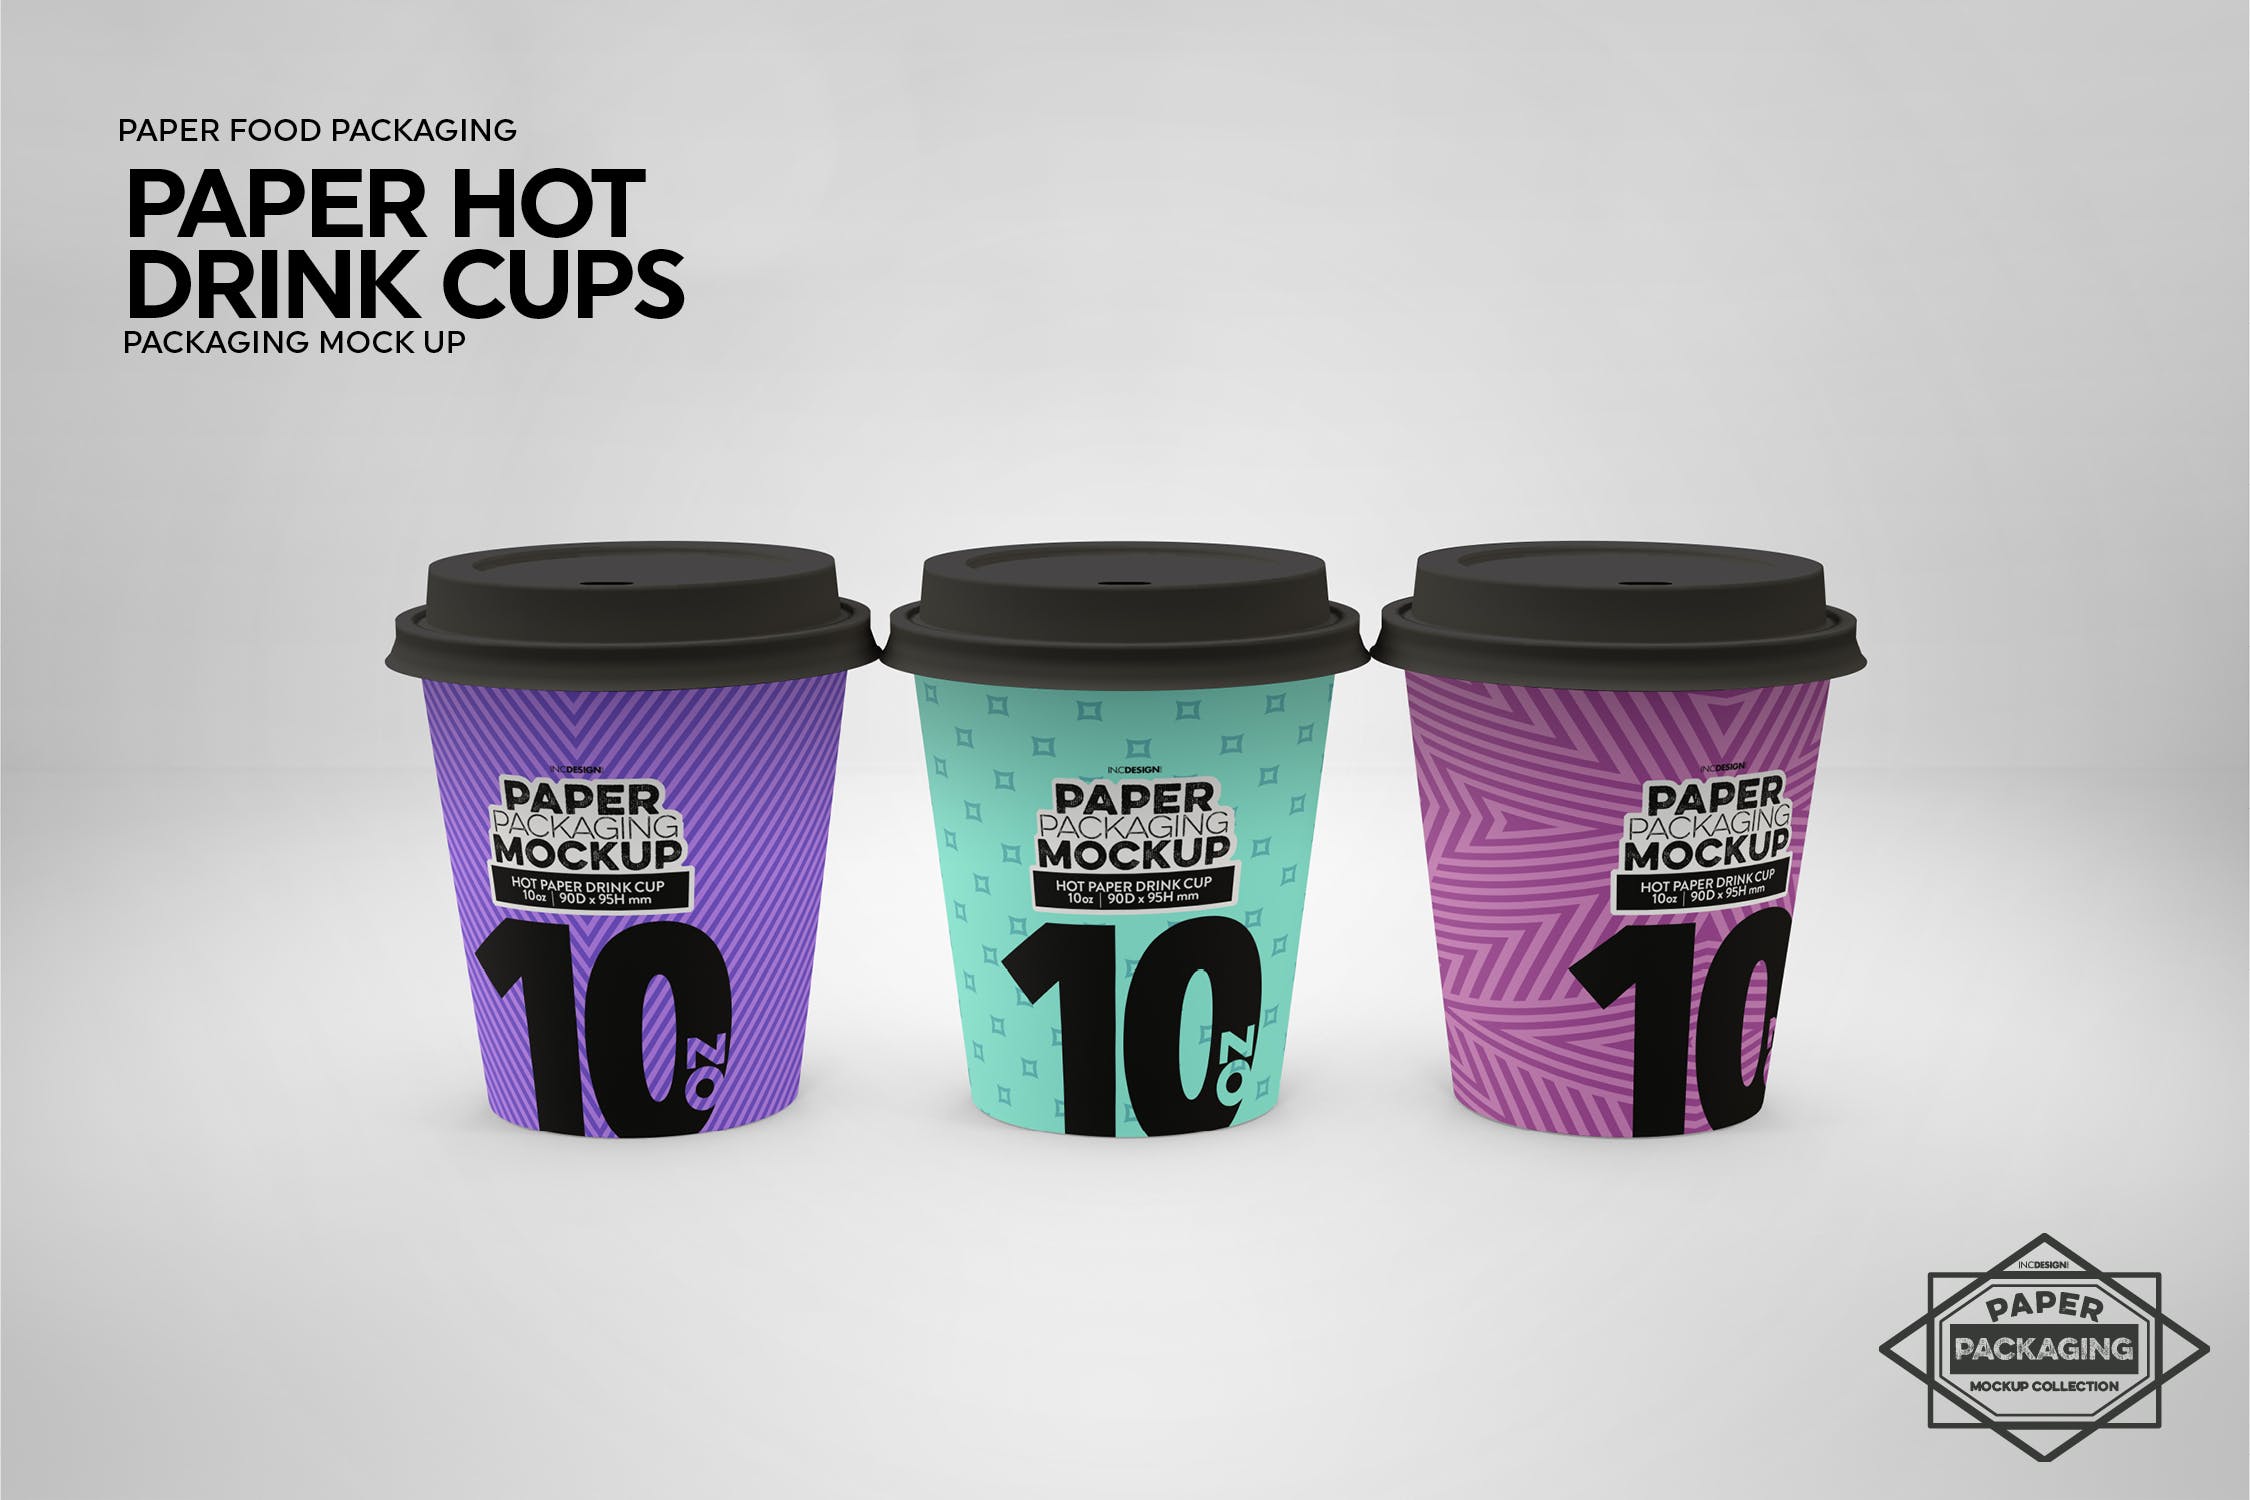 热饮一次性纸杯外观设计素材库精选 Paper Hot Drink Cups Packaging Mockup插图(12)